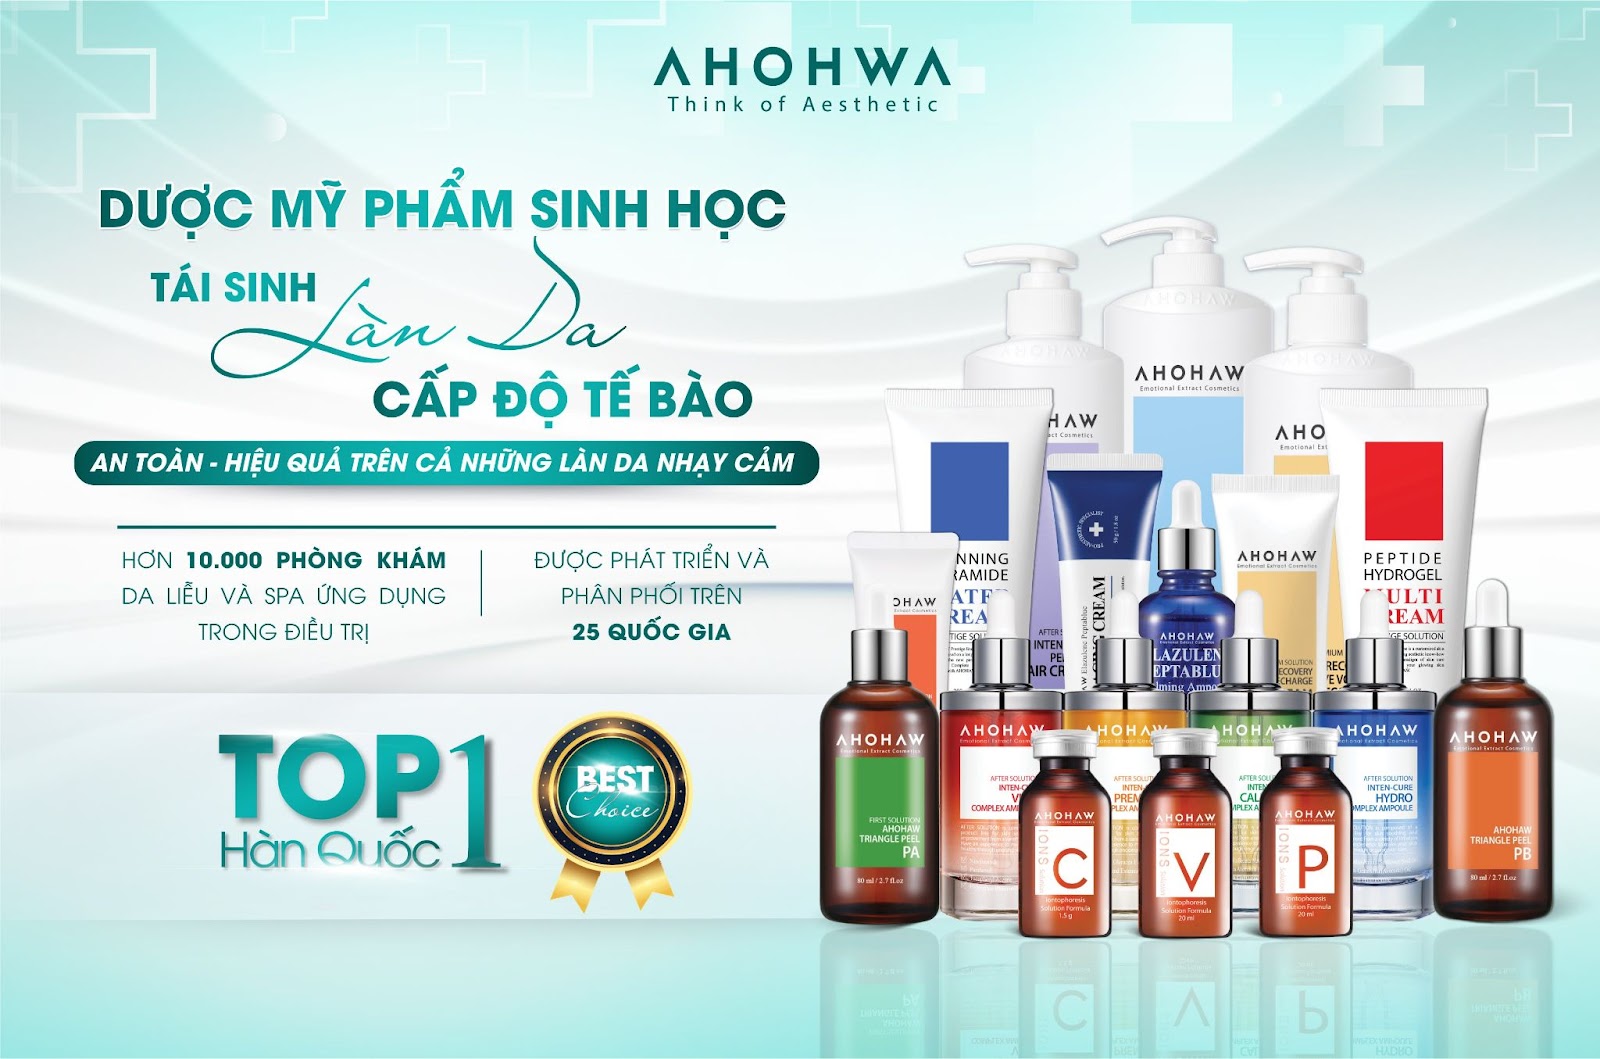 &quot;Vẻ đẹp xứng tầm&quot; - sự kiện khẳng định vị thế của thương hiệu Ahohwa trên thị trường mỹ phẩm thẩm mỹ Việt Nam - Ảnh 3.